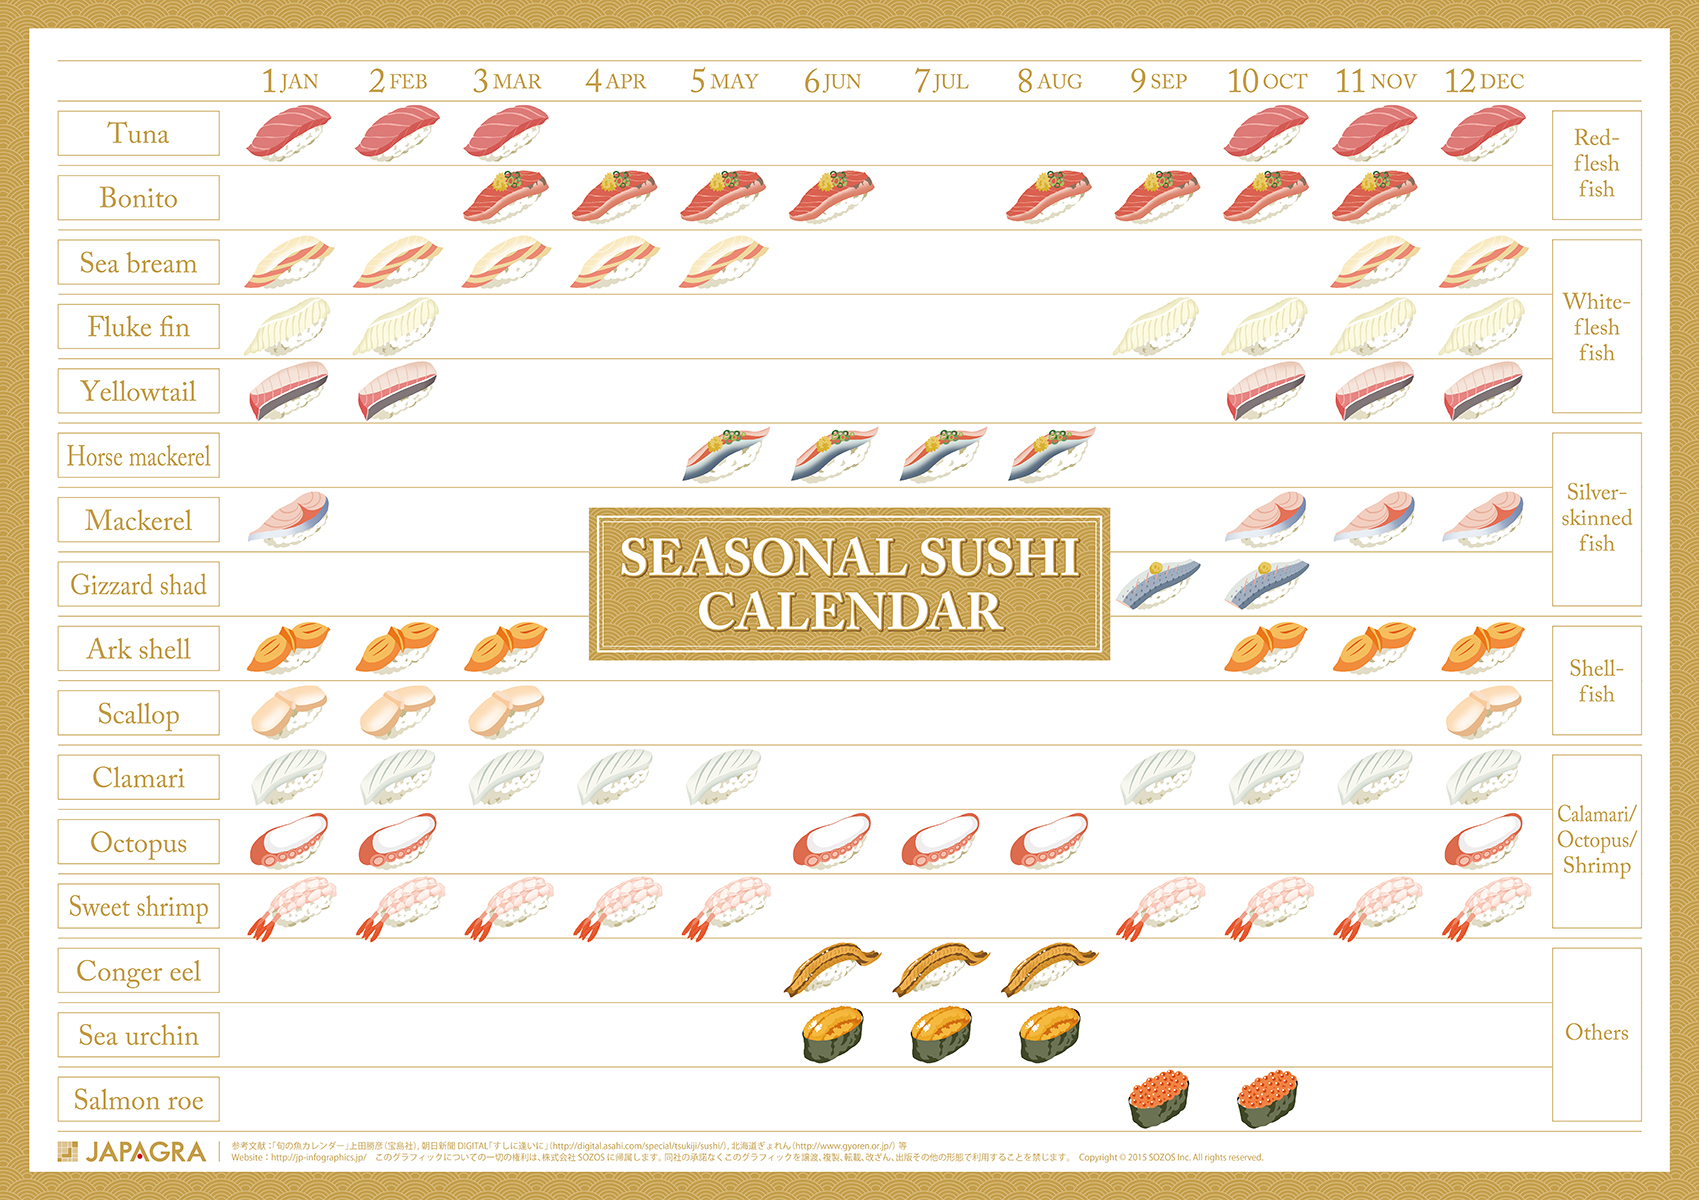 今一番おいしい がわかる 旬の寿司ネタカレンダー インフォグラフィックで日本がわかる Japagra ジャパグラ